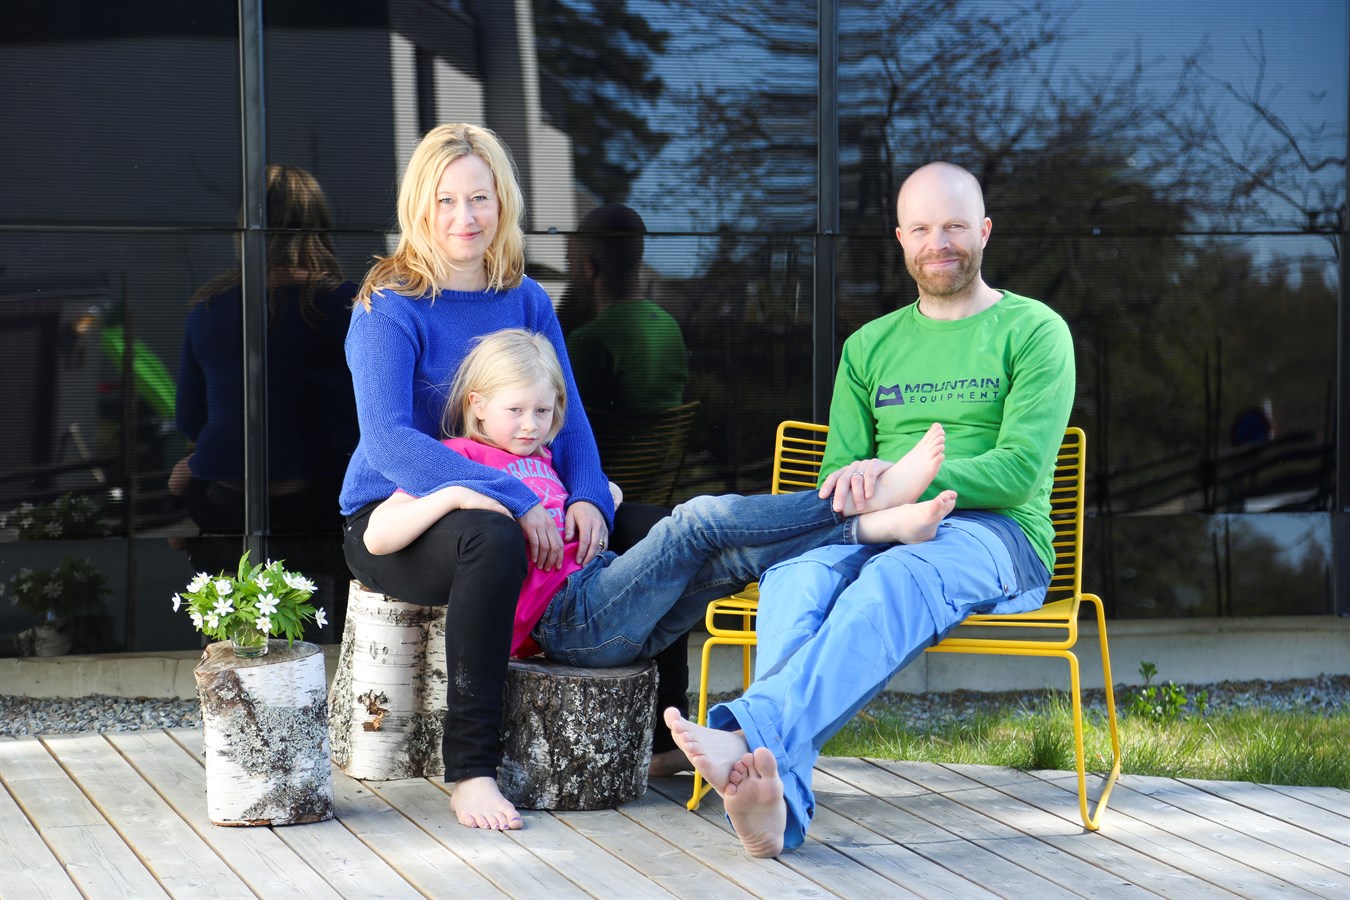 The Jogensjö family